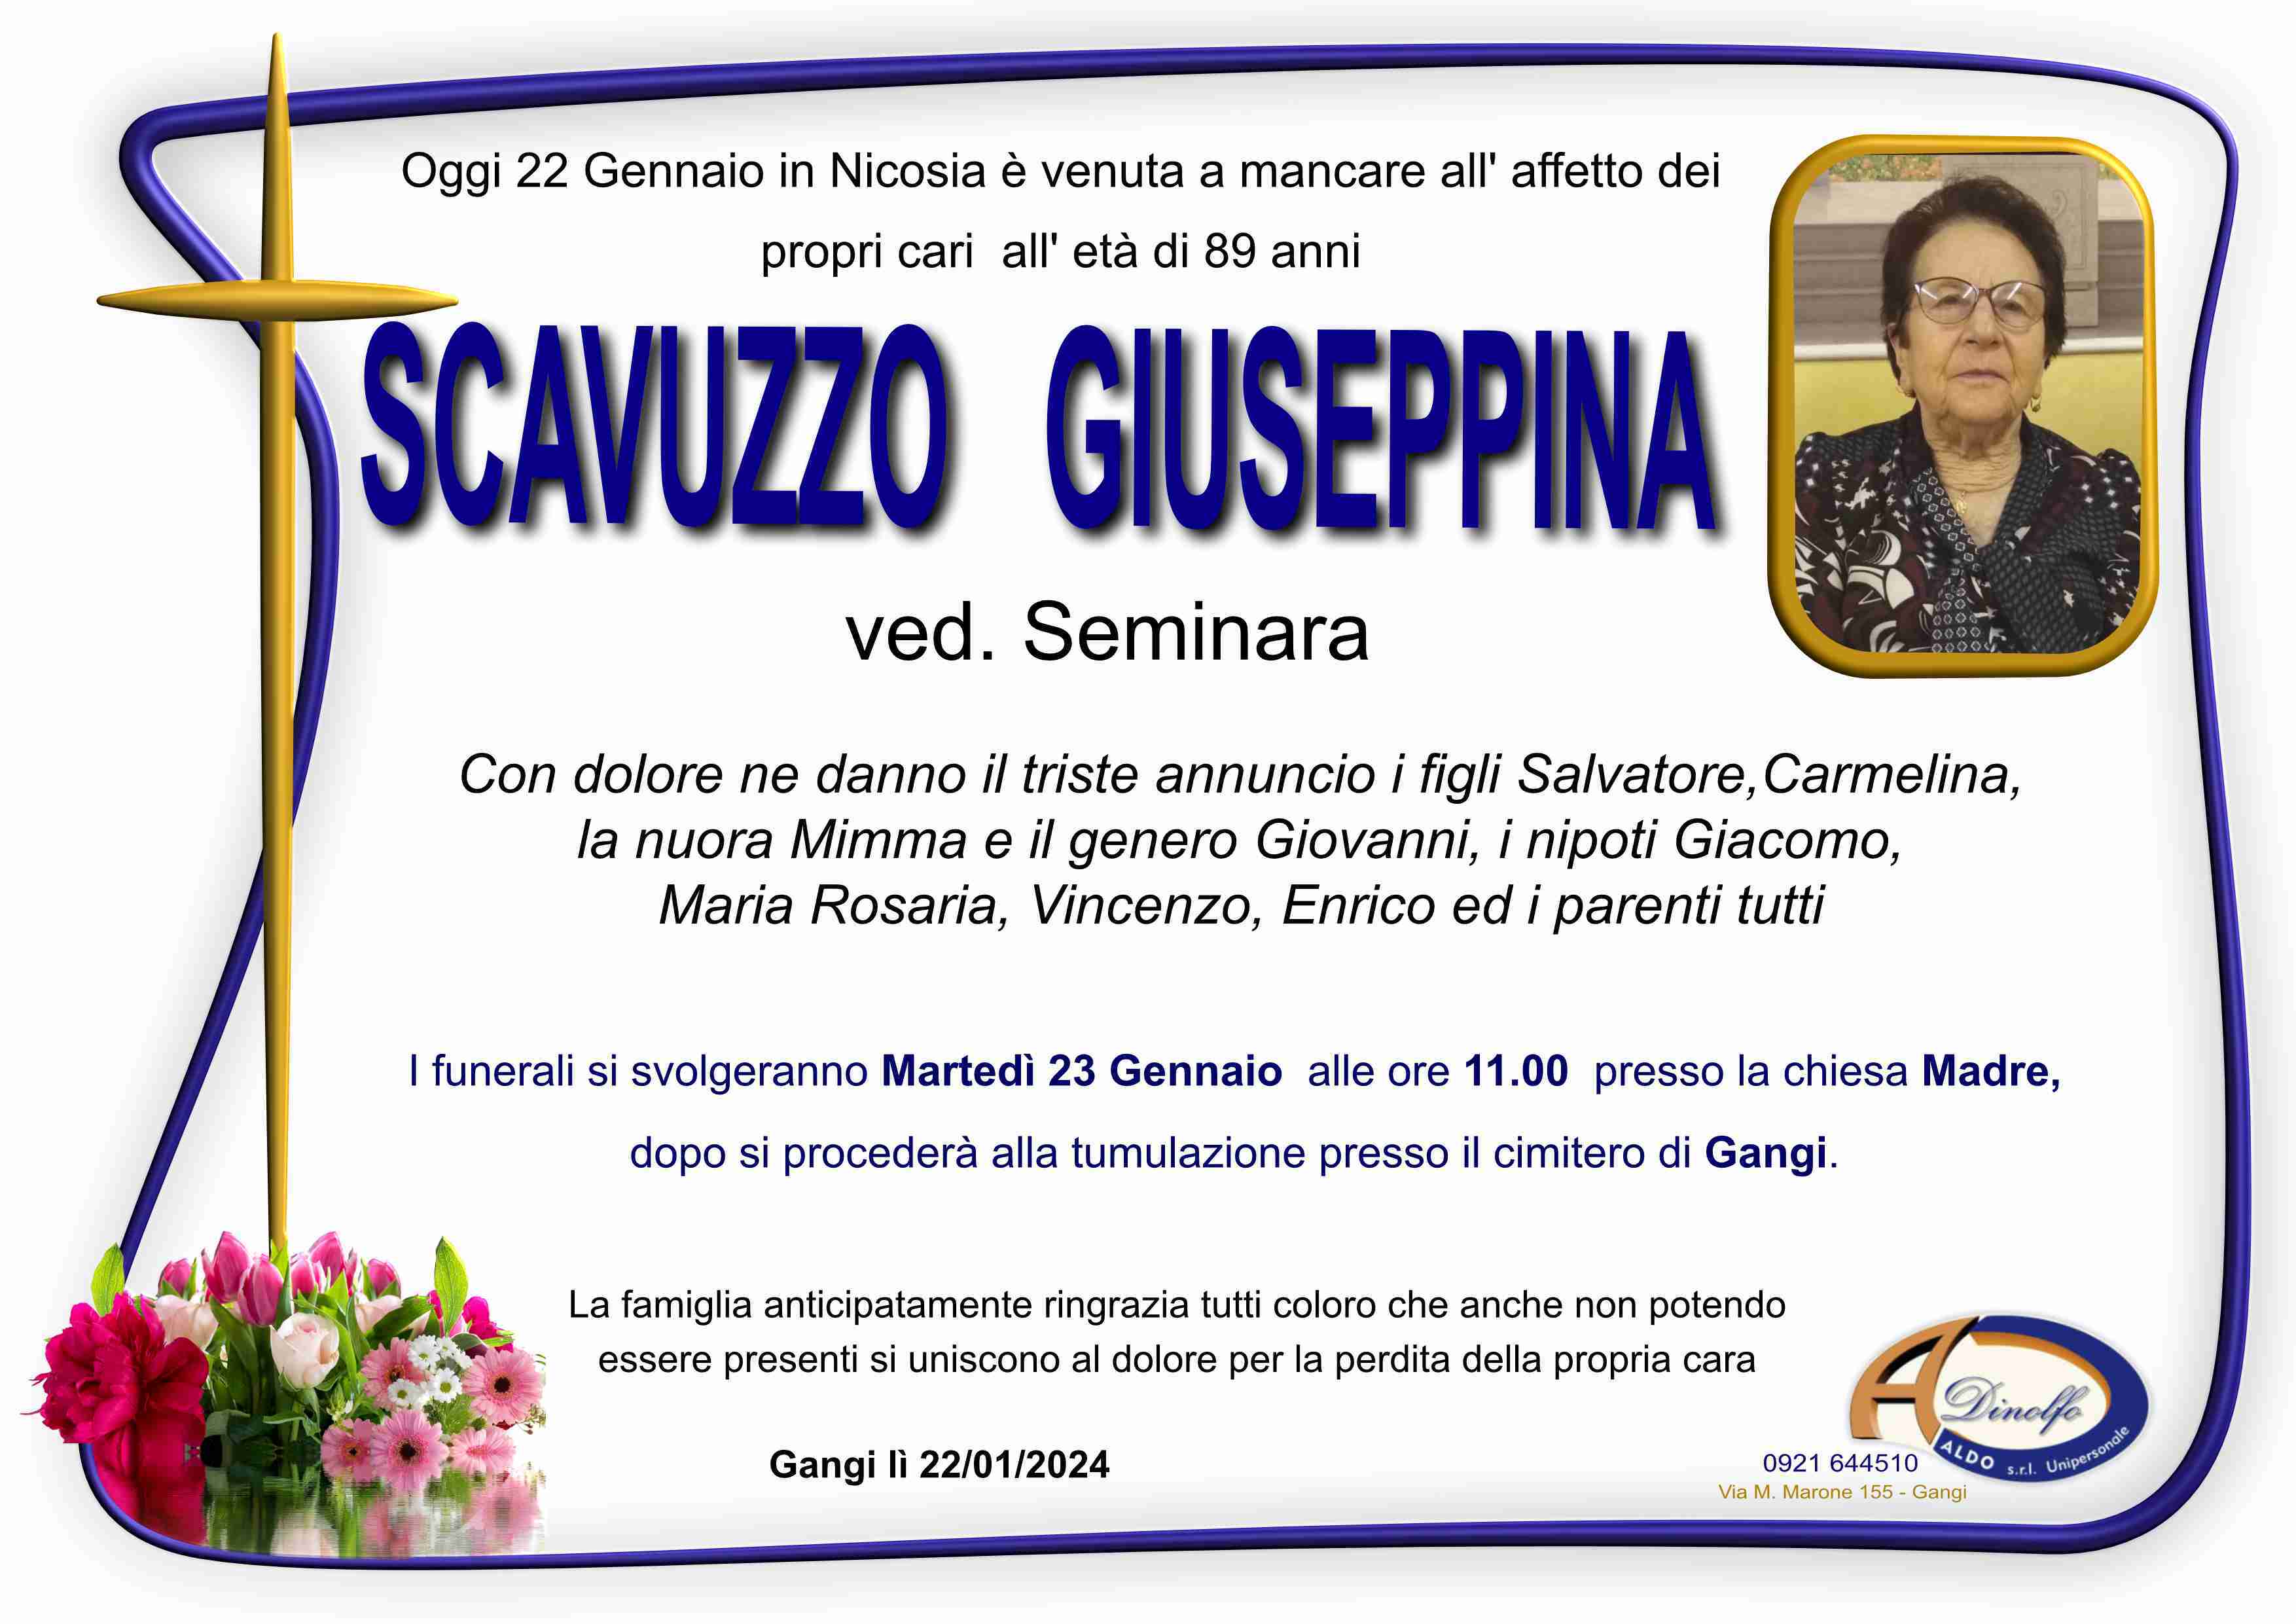 Giuseppina Scavuzzo